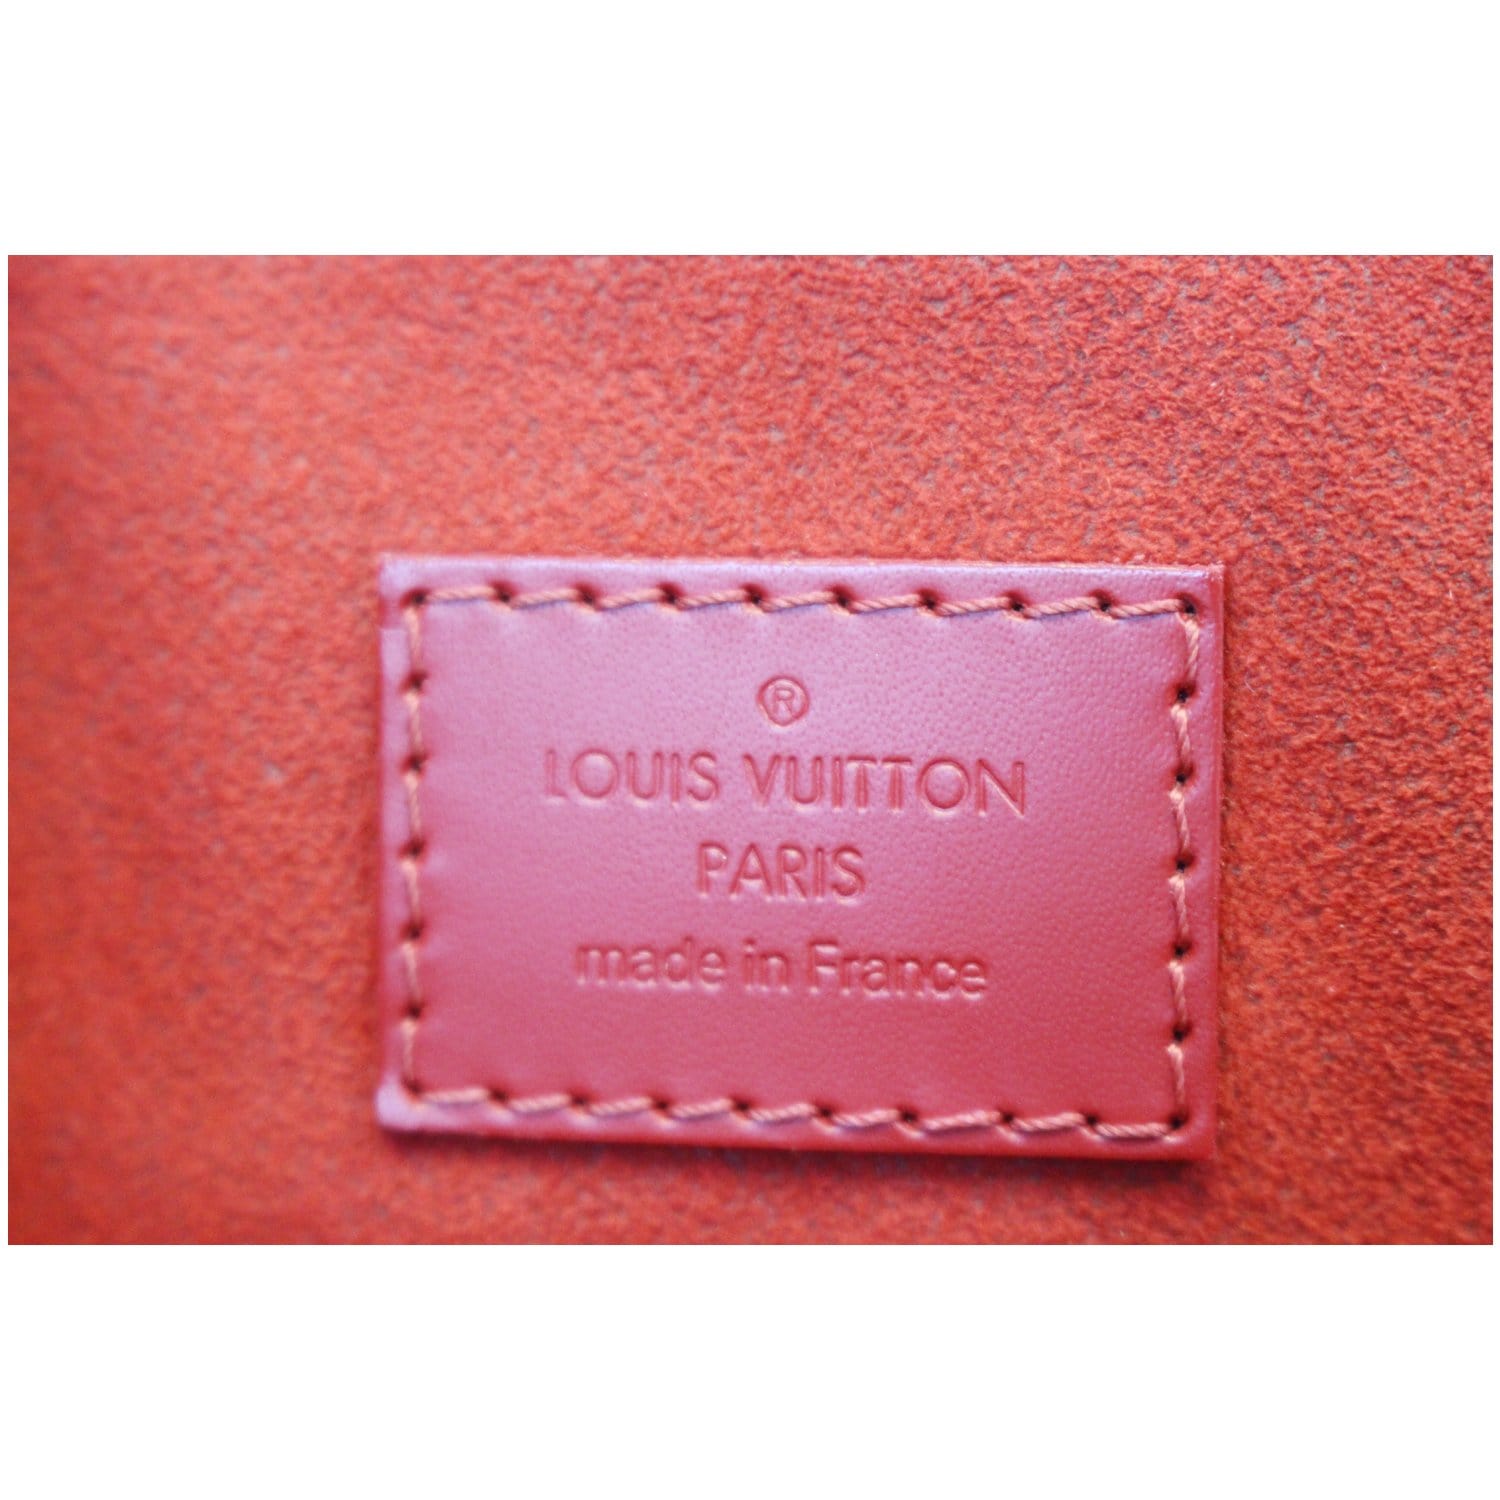 Poshbag Boutique - This Louis Vuitton Caissa MM is in excellent